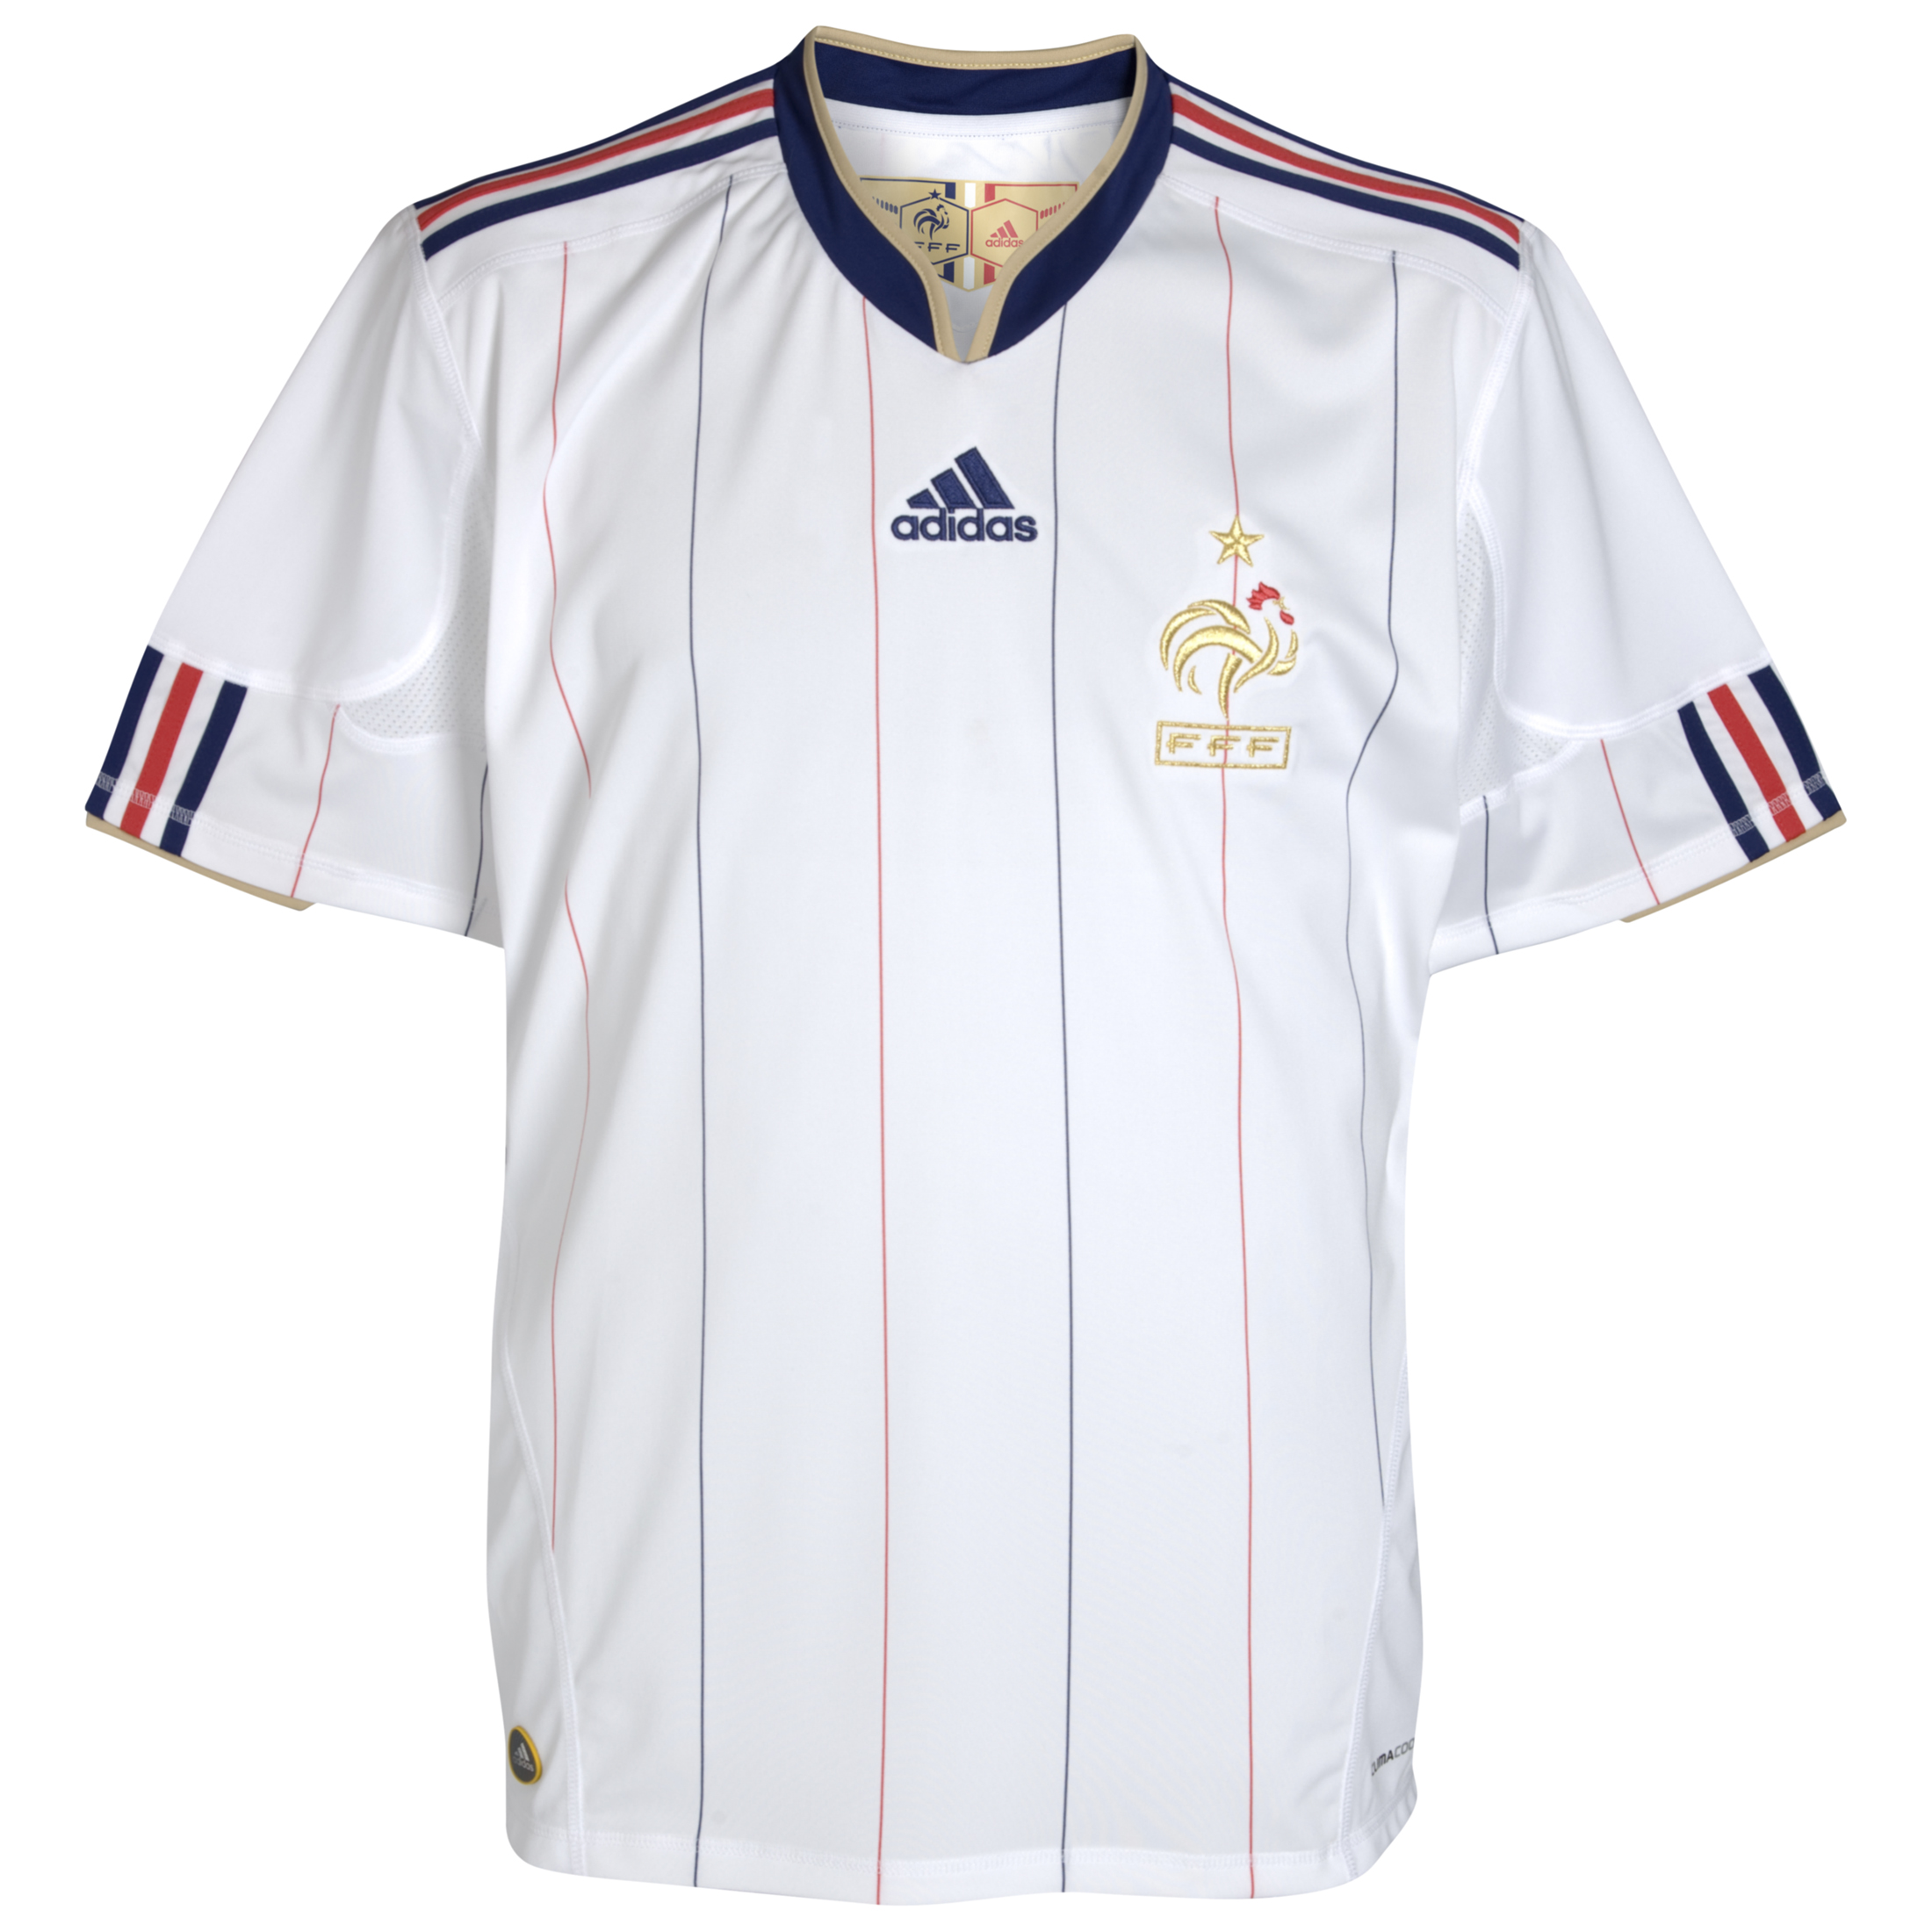 ملابس المنتخبات لكأس العالم ‎(2010)‎ Kb-66928